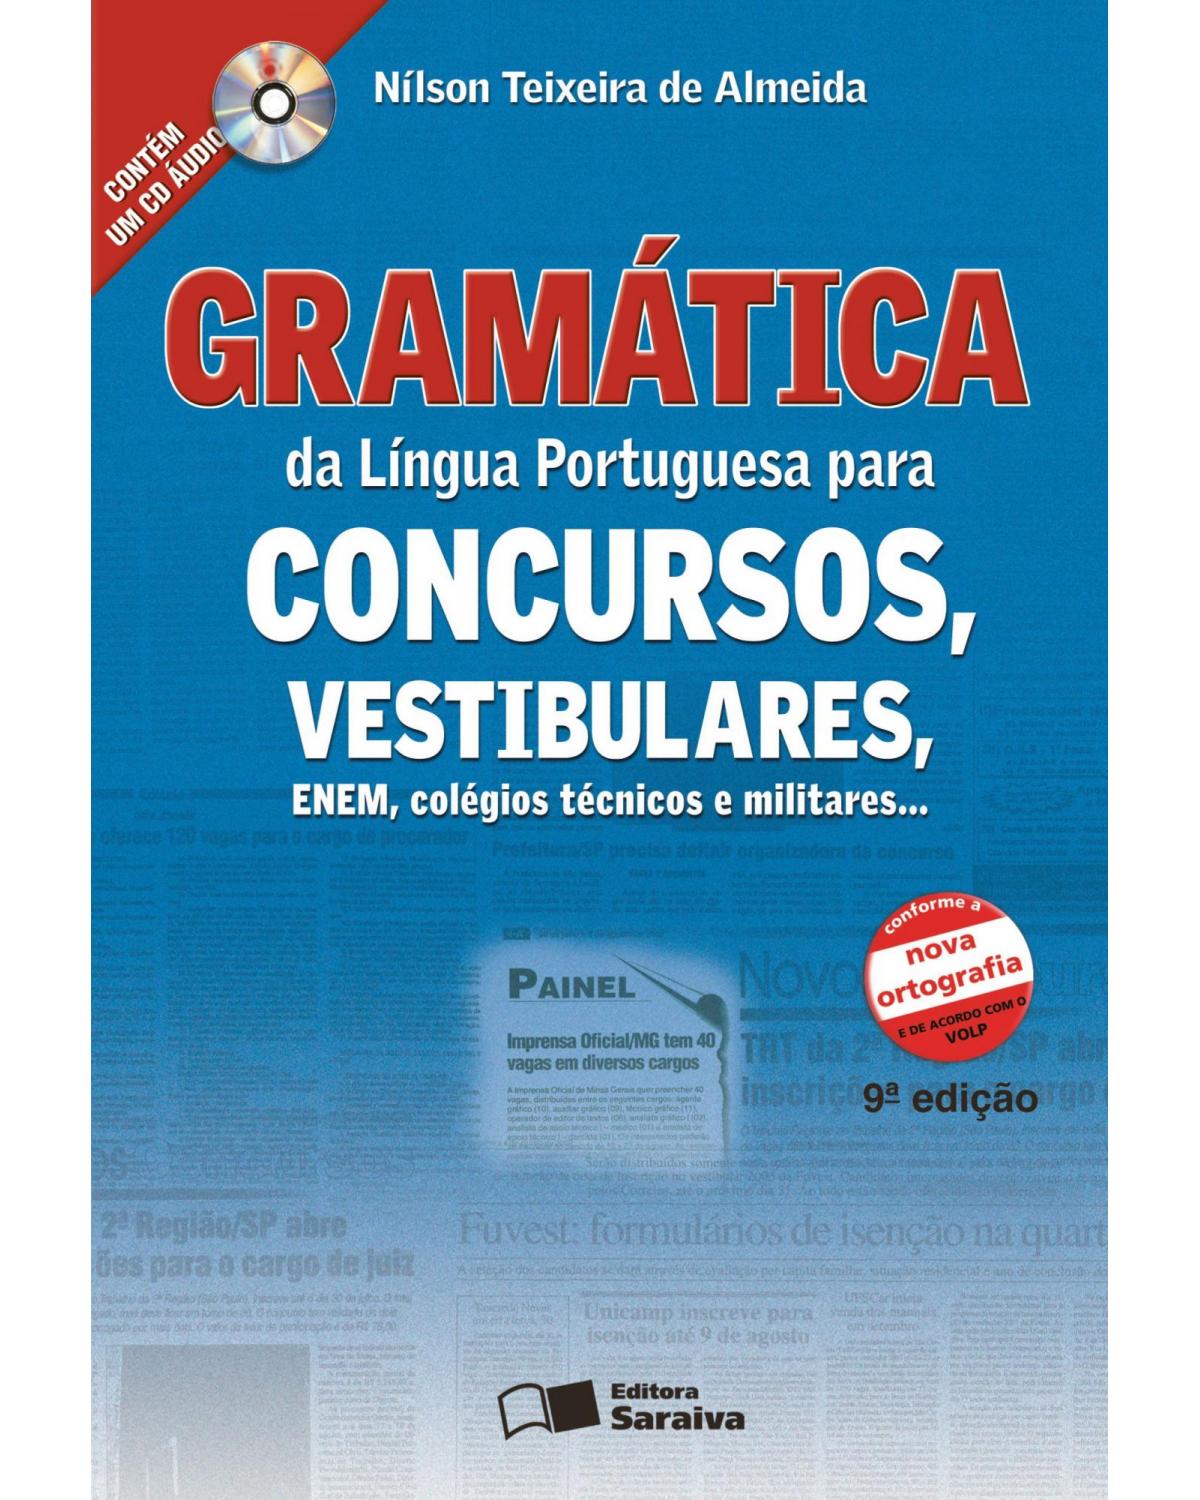 Gramática da língua portuguesa para concursos, vestibulares, ENEM, colégios técnicos e militares - 9ª Edição | 2009